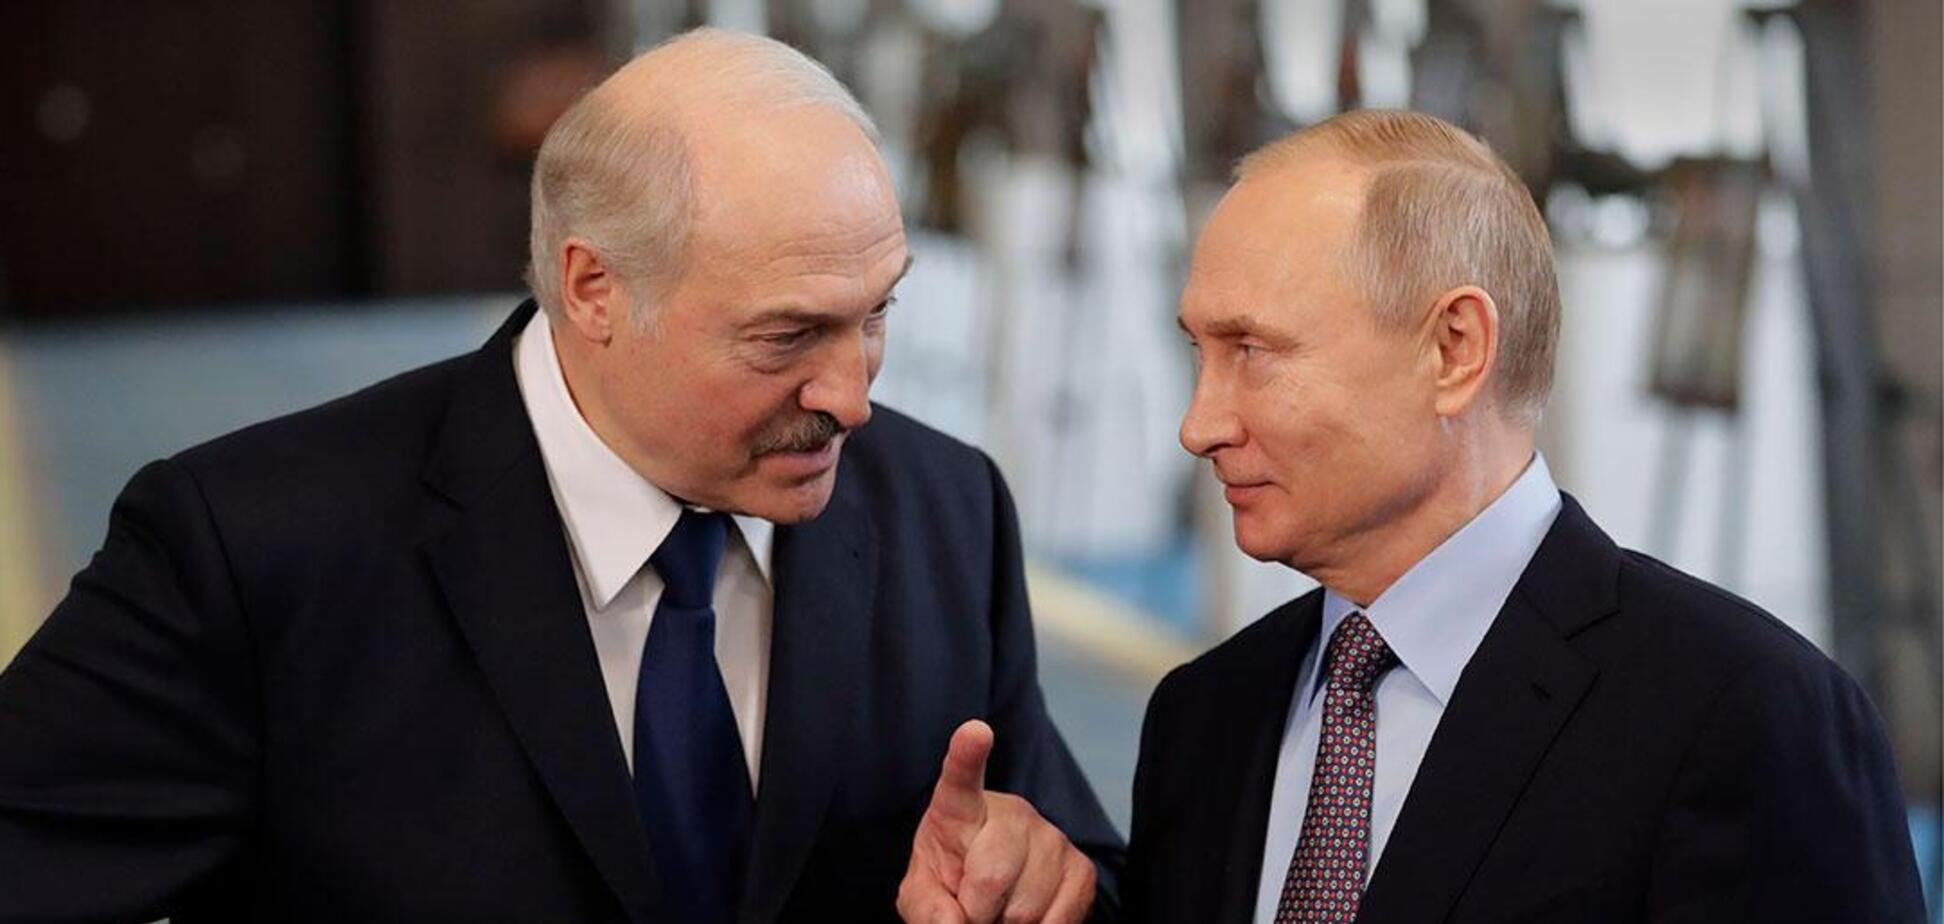 Олександр Лукашенко висунув Володимиру Путіну умову для об'єднання Росії та Білорусі